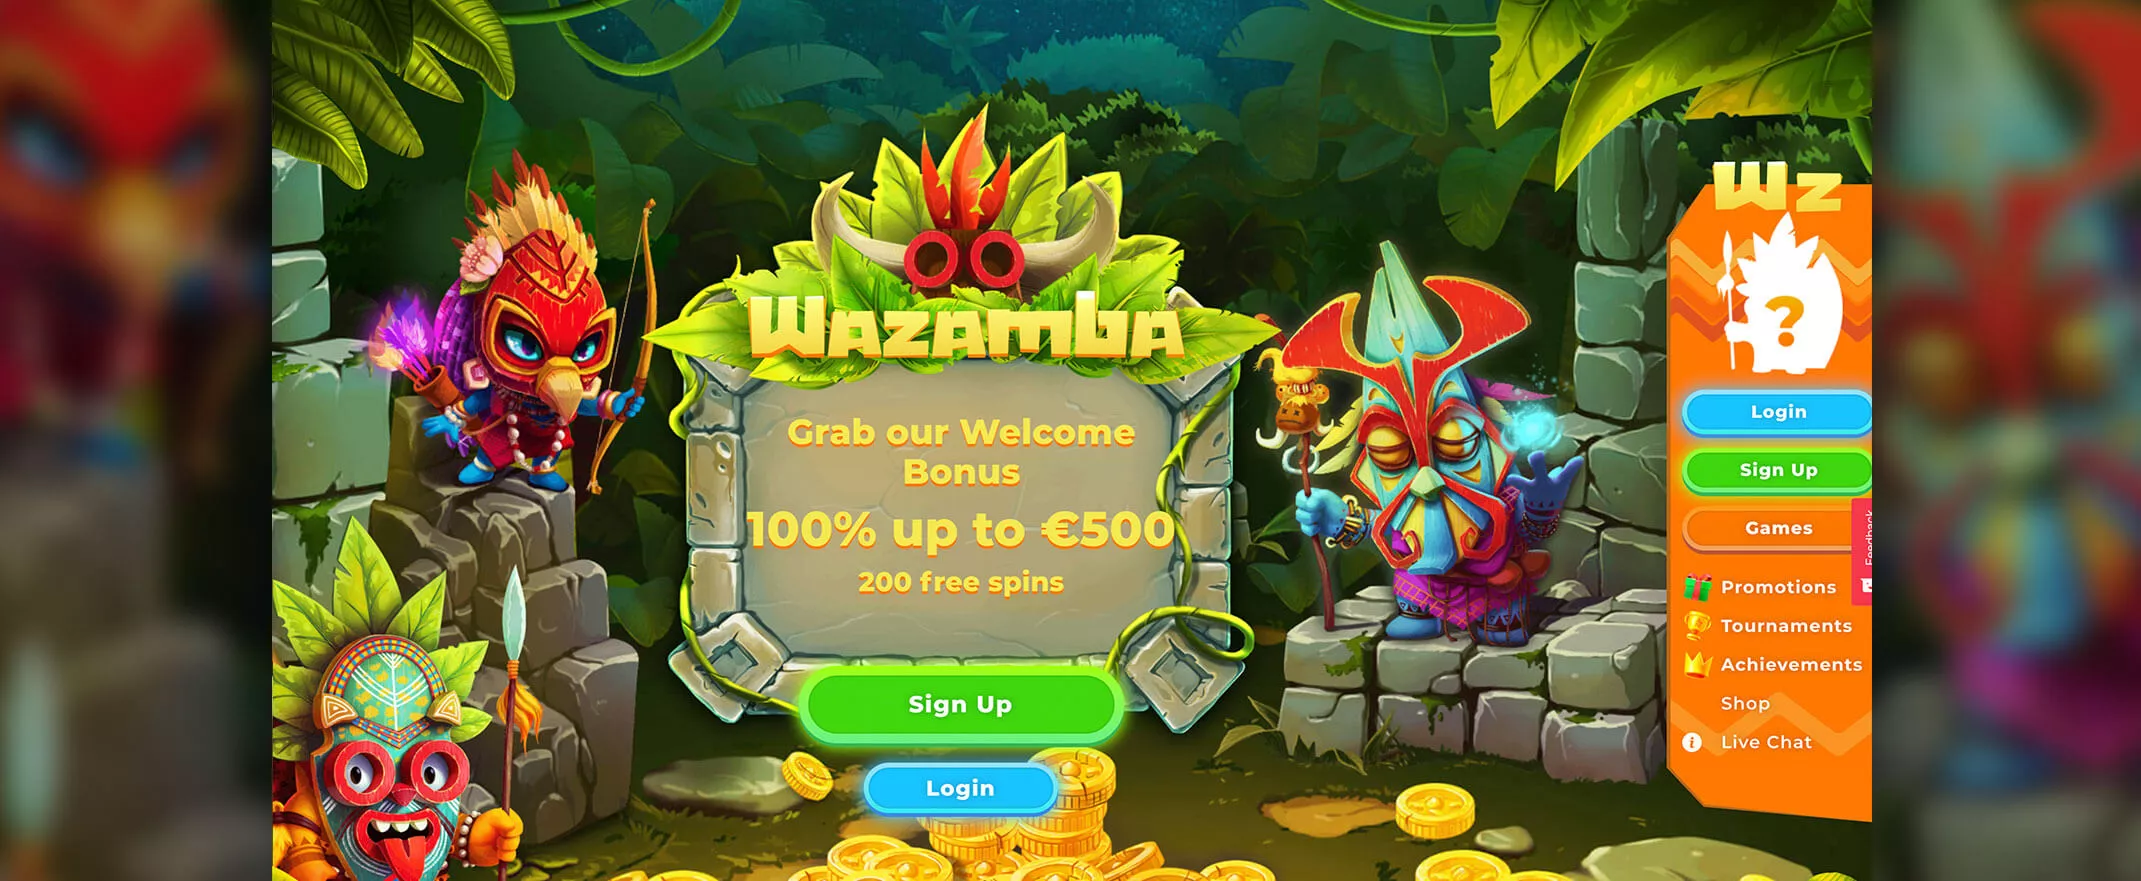 Wazamba Casino homepage screenshot